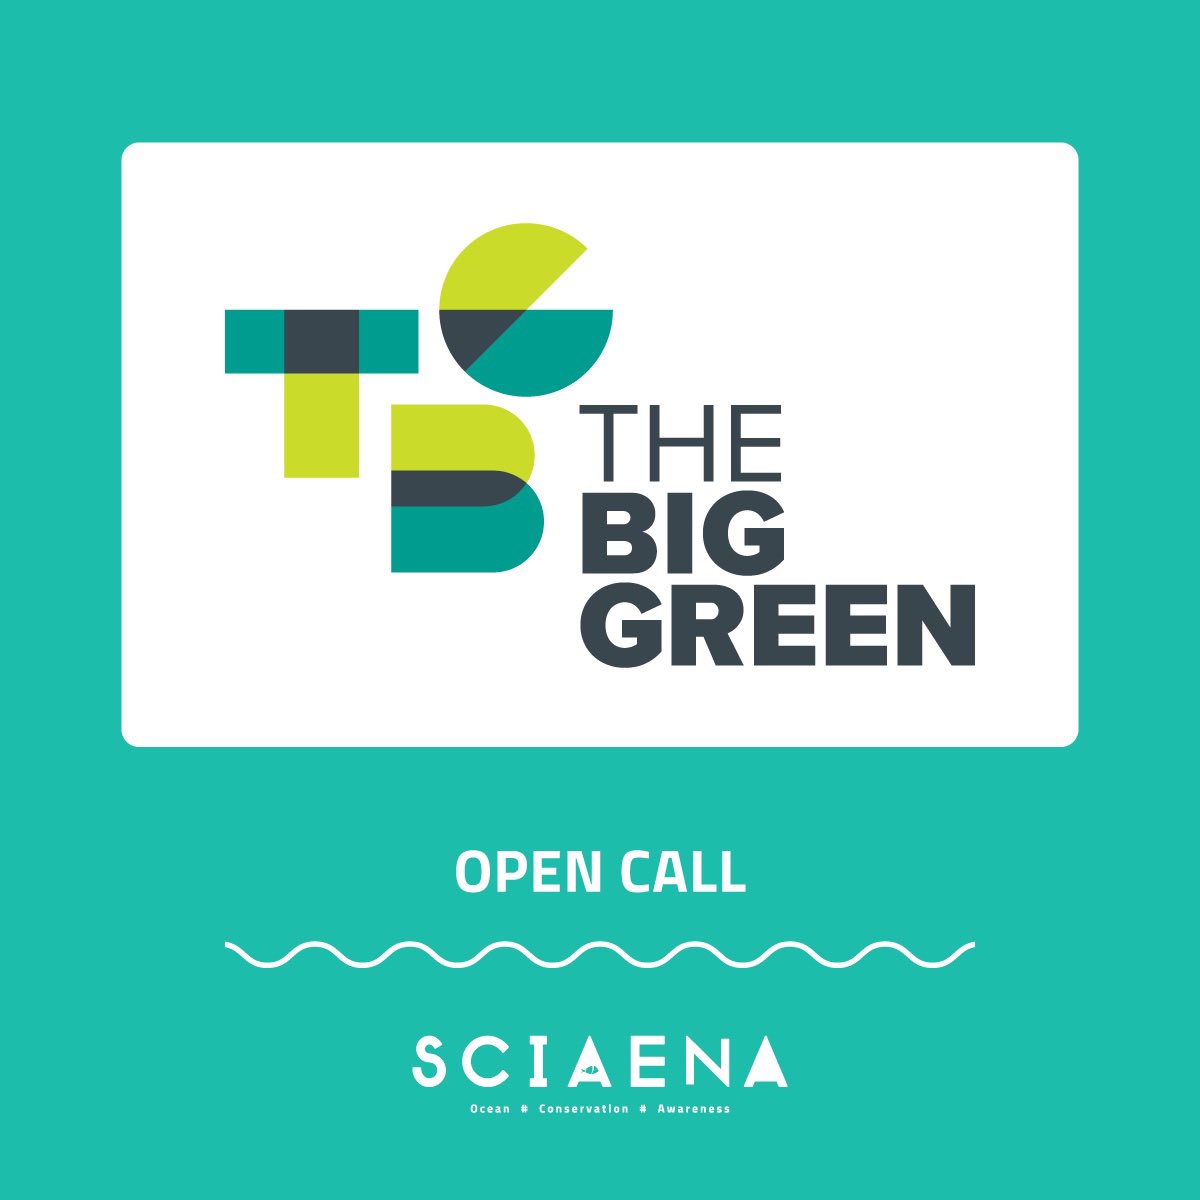 📣OPEN CALL 📣

🇪🇺“SOIL” é um projeto de quatro anos apoiado pela #CreativeEurope que une artistas e coletivos interessados pela conservação do ambiente, cientistas e ONG. 
Info aqui: sciaena.org/open-call-soil/
🔗Inscrições aqui até 20 de Maio: lnkd.in/eW2tPEsv
#TheBigGreen